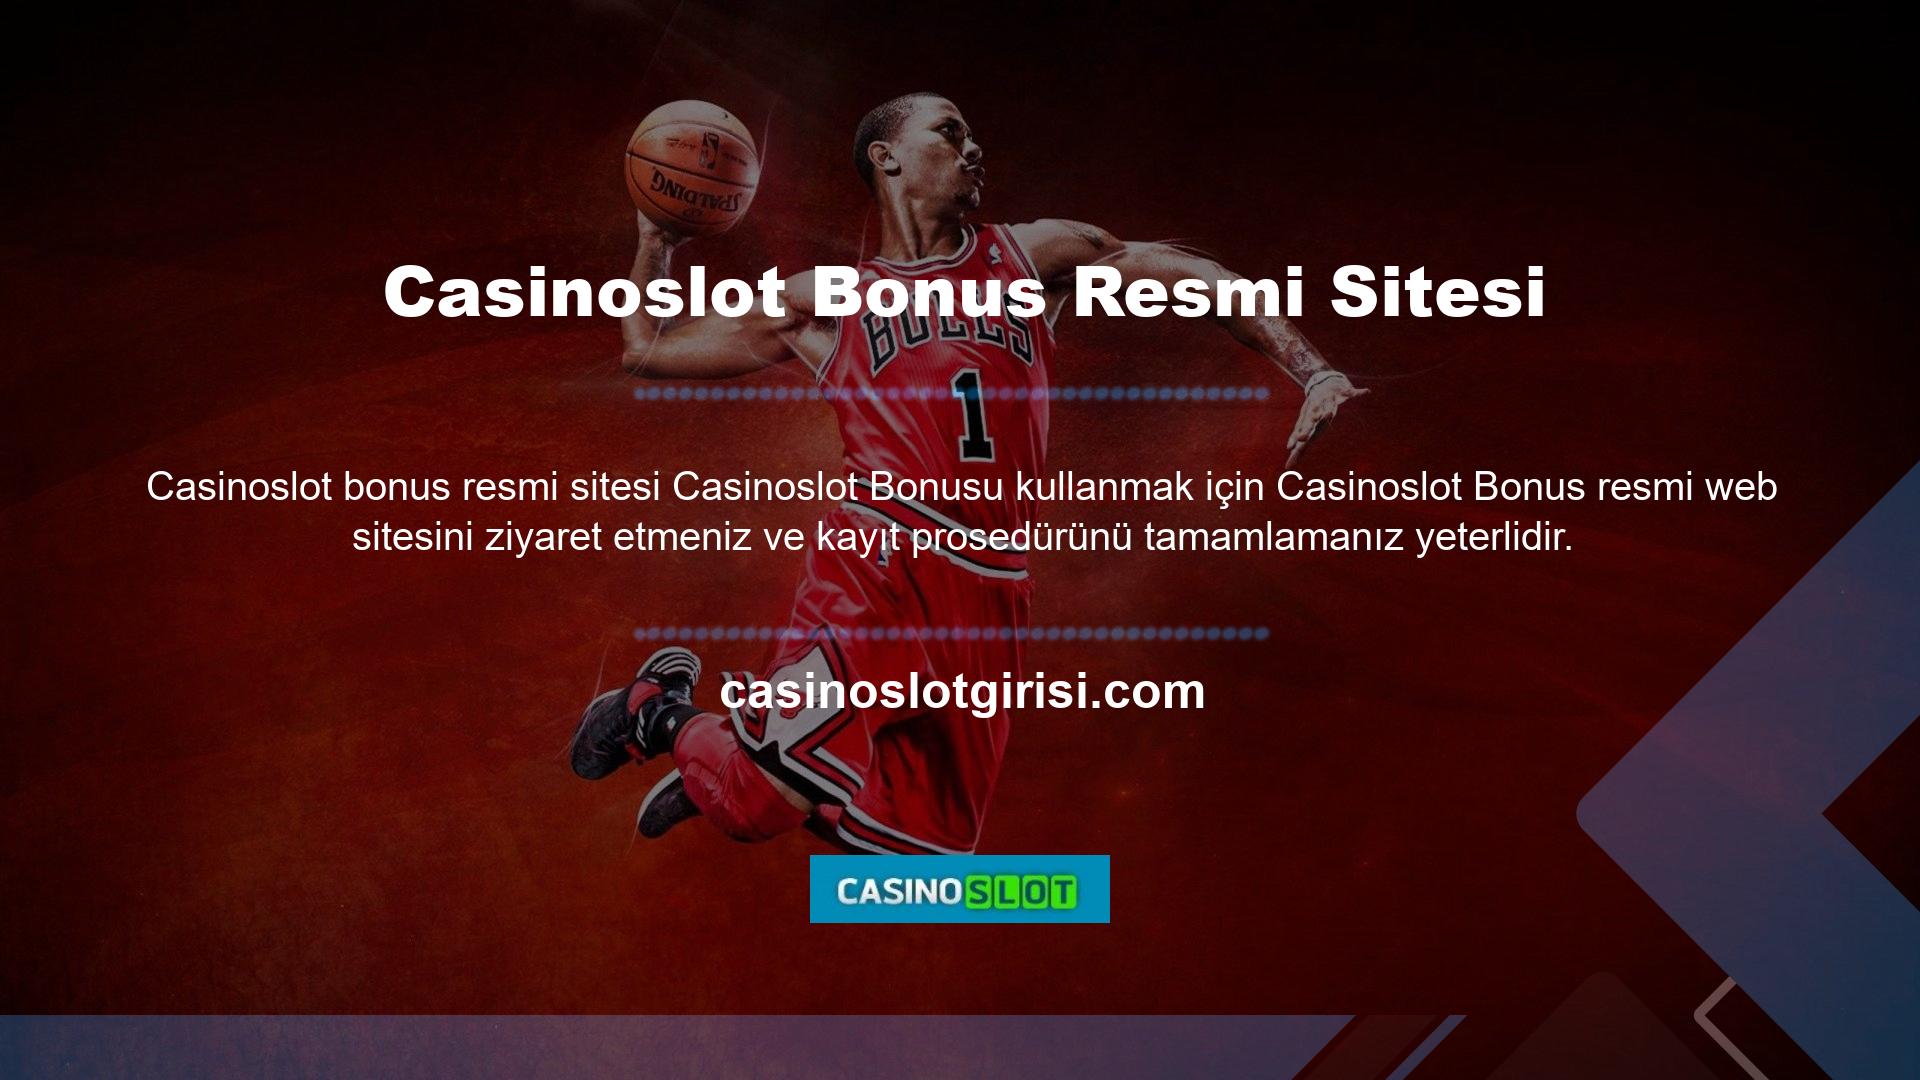 Eğer Casinoslot kayıtlıysanız Casinoslot üye olduktan sonra oyuna katılabilir ve bonuslardan yararlanabilirsiniz